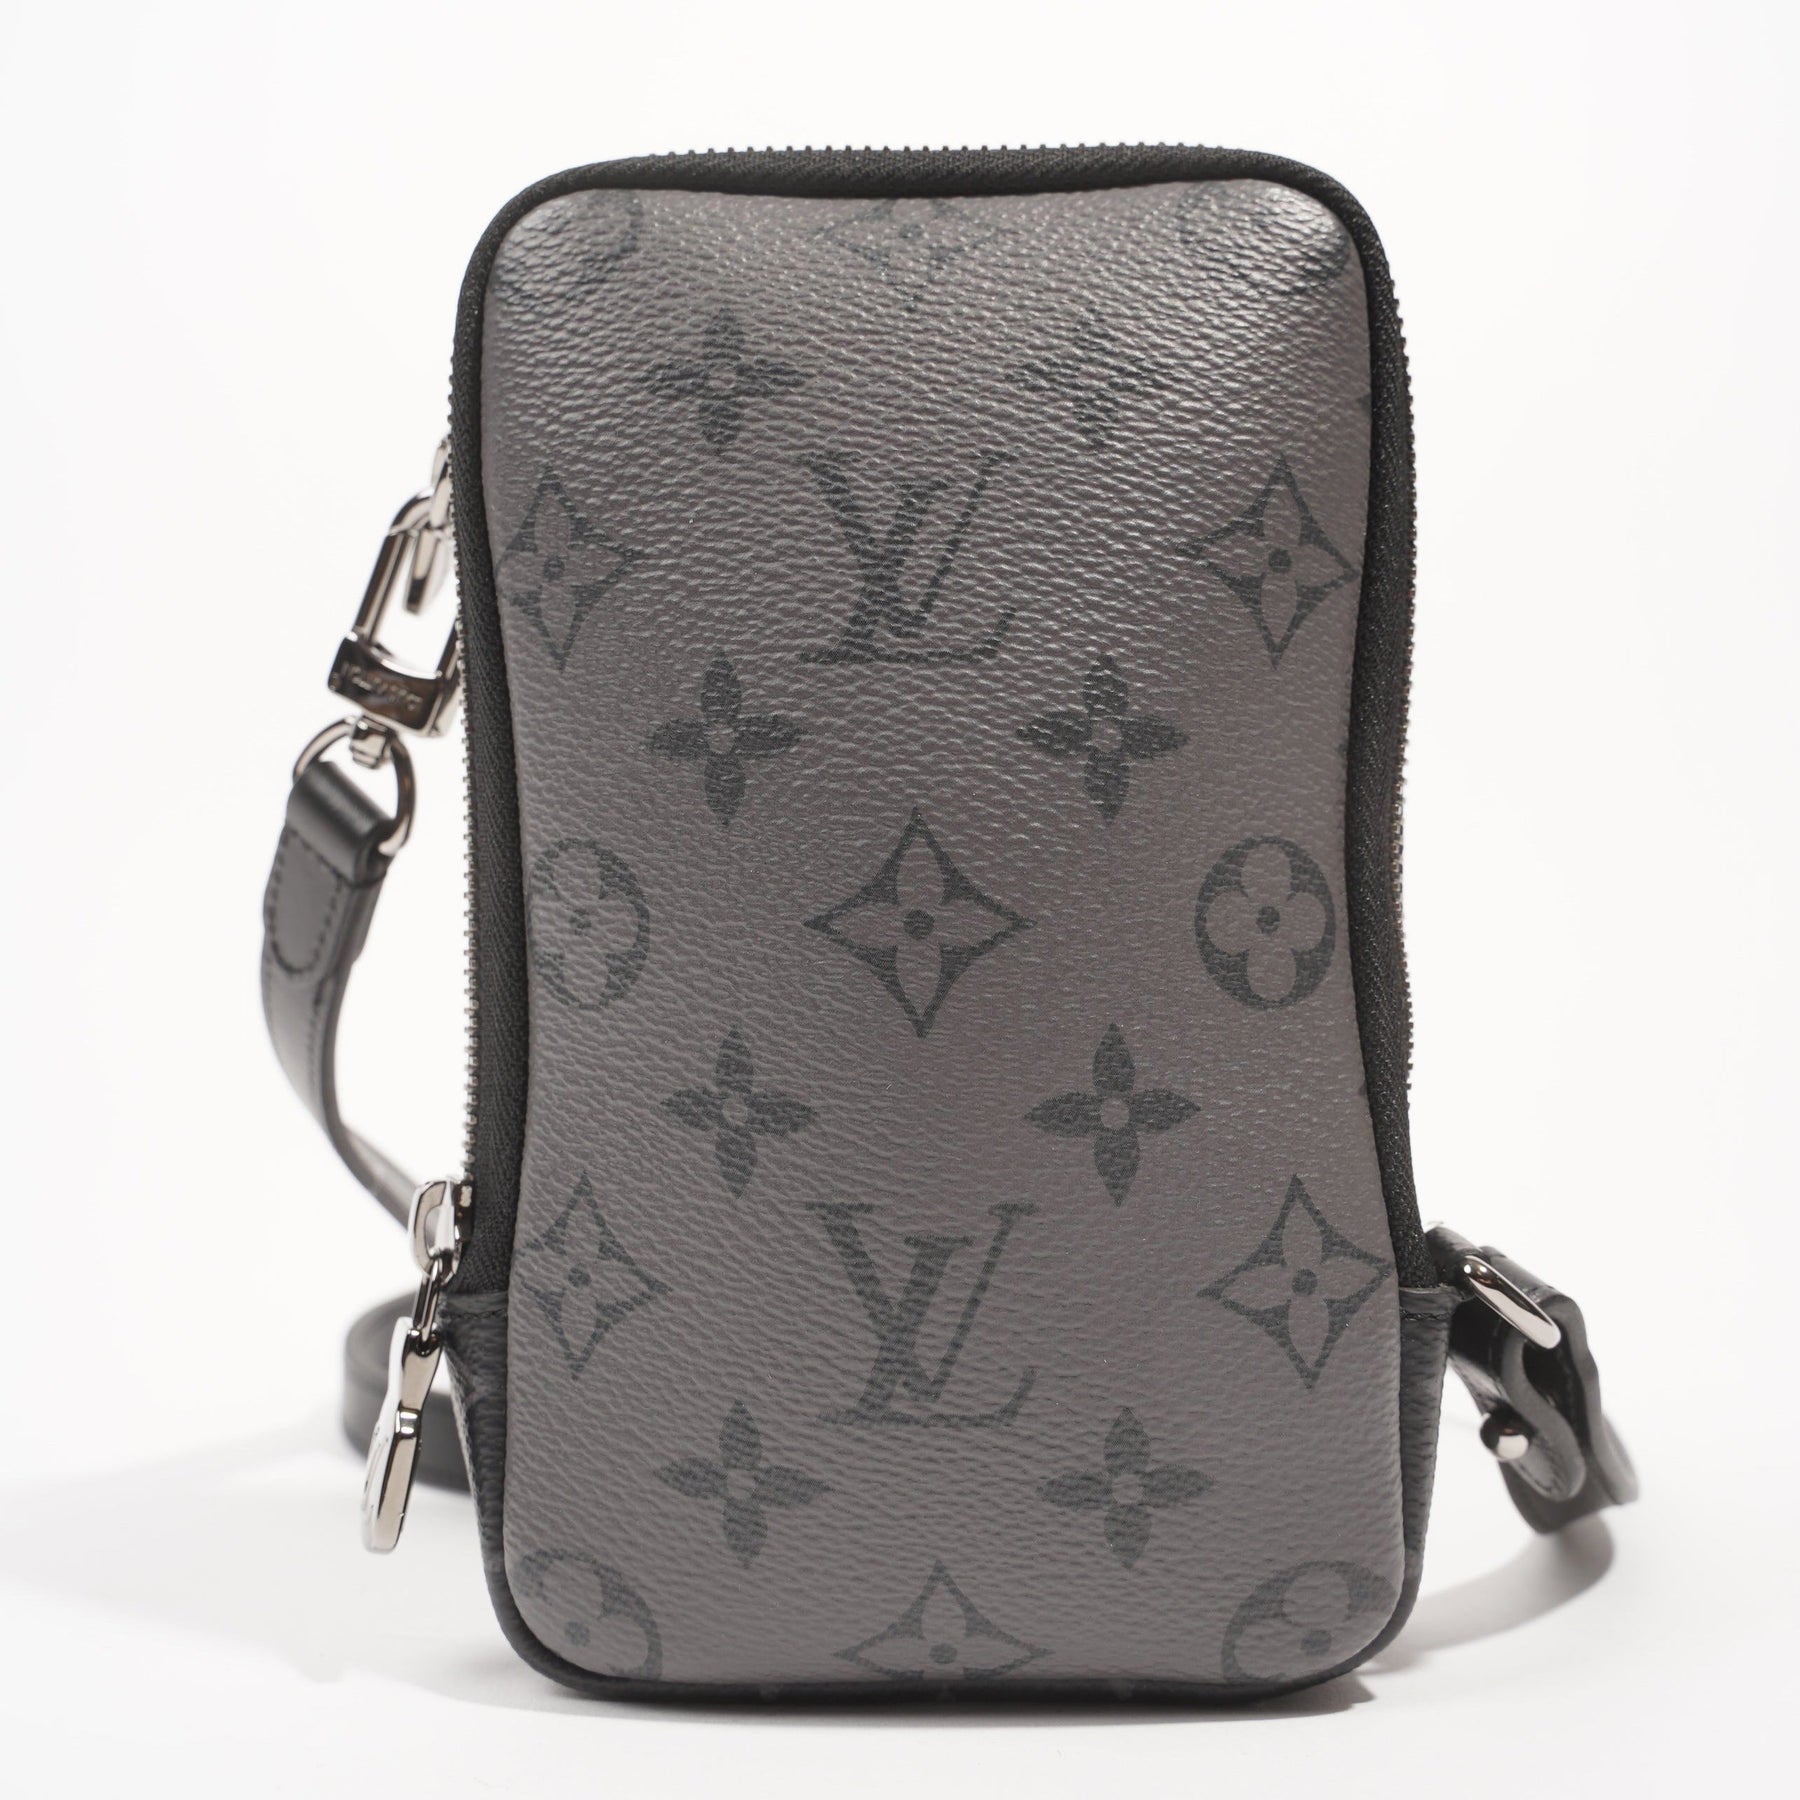 Louis Vuitton LV Double Phone Pouch Bag Wallet - India